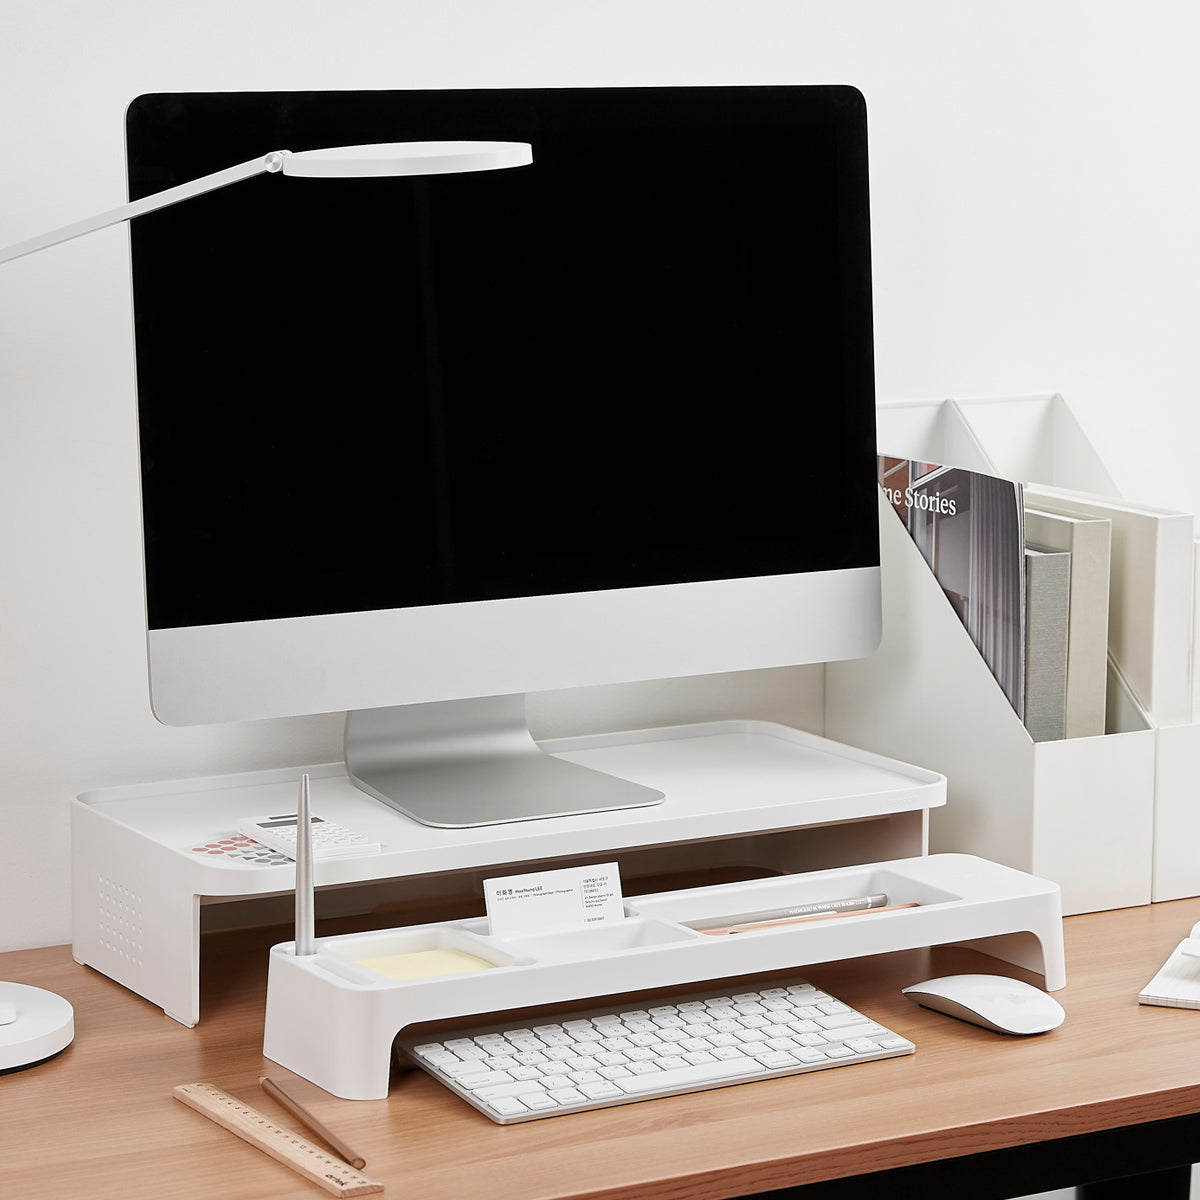  VIVO Soporte para monitor de 15 pulgadas, elevador de  escritorio de madera y acero, pantalla, teclado, portátil, organizador  ergonómico de escritorio y mesa de TV pequeño, blanco, STAND-V000DS-W :  Electrónica